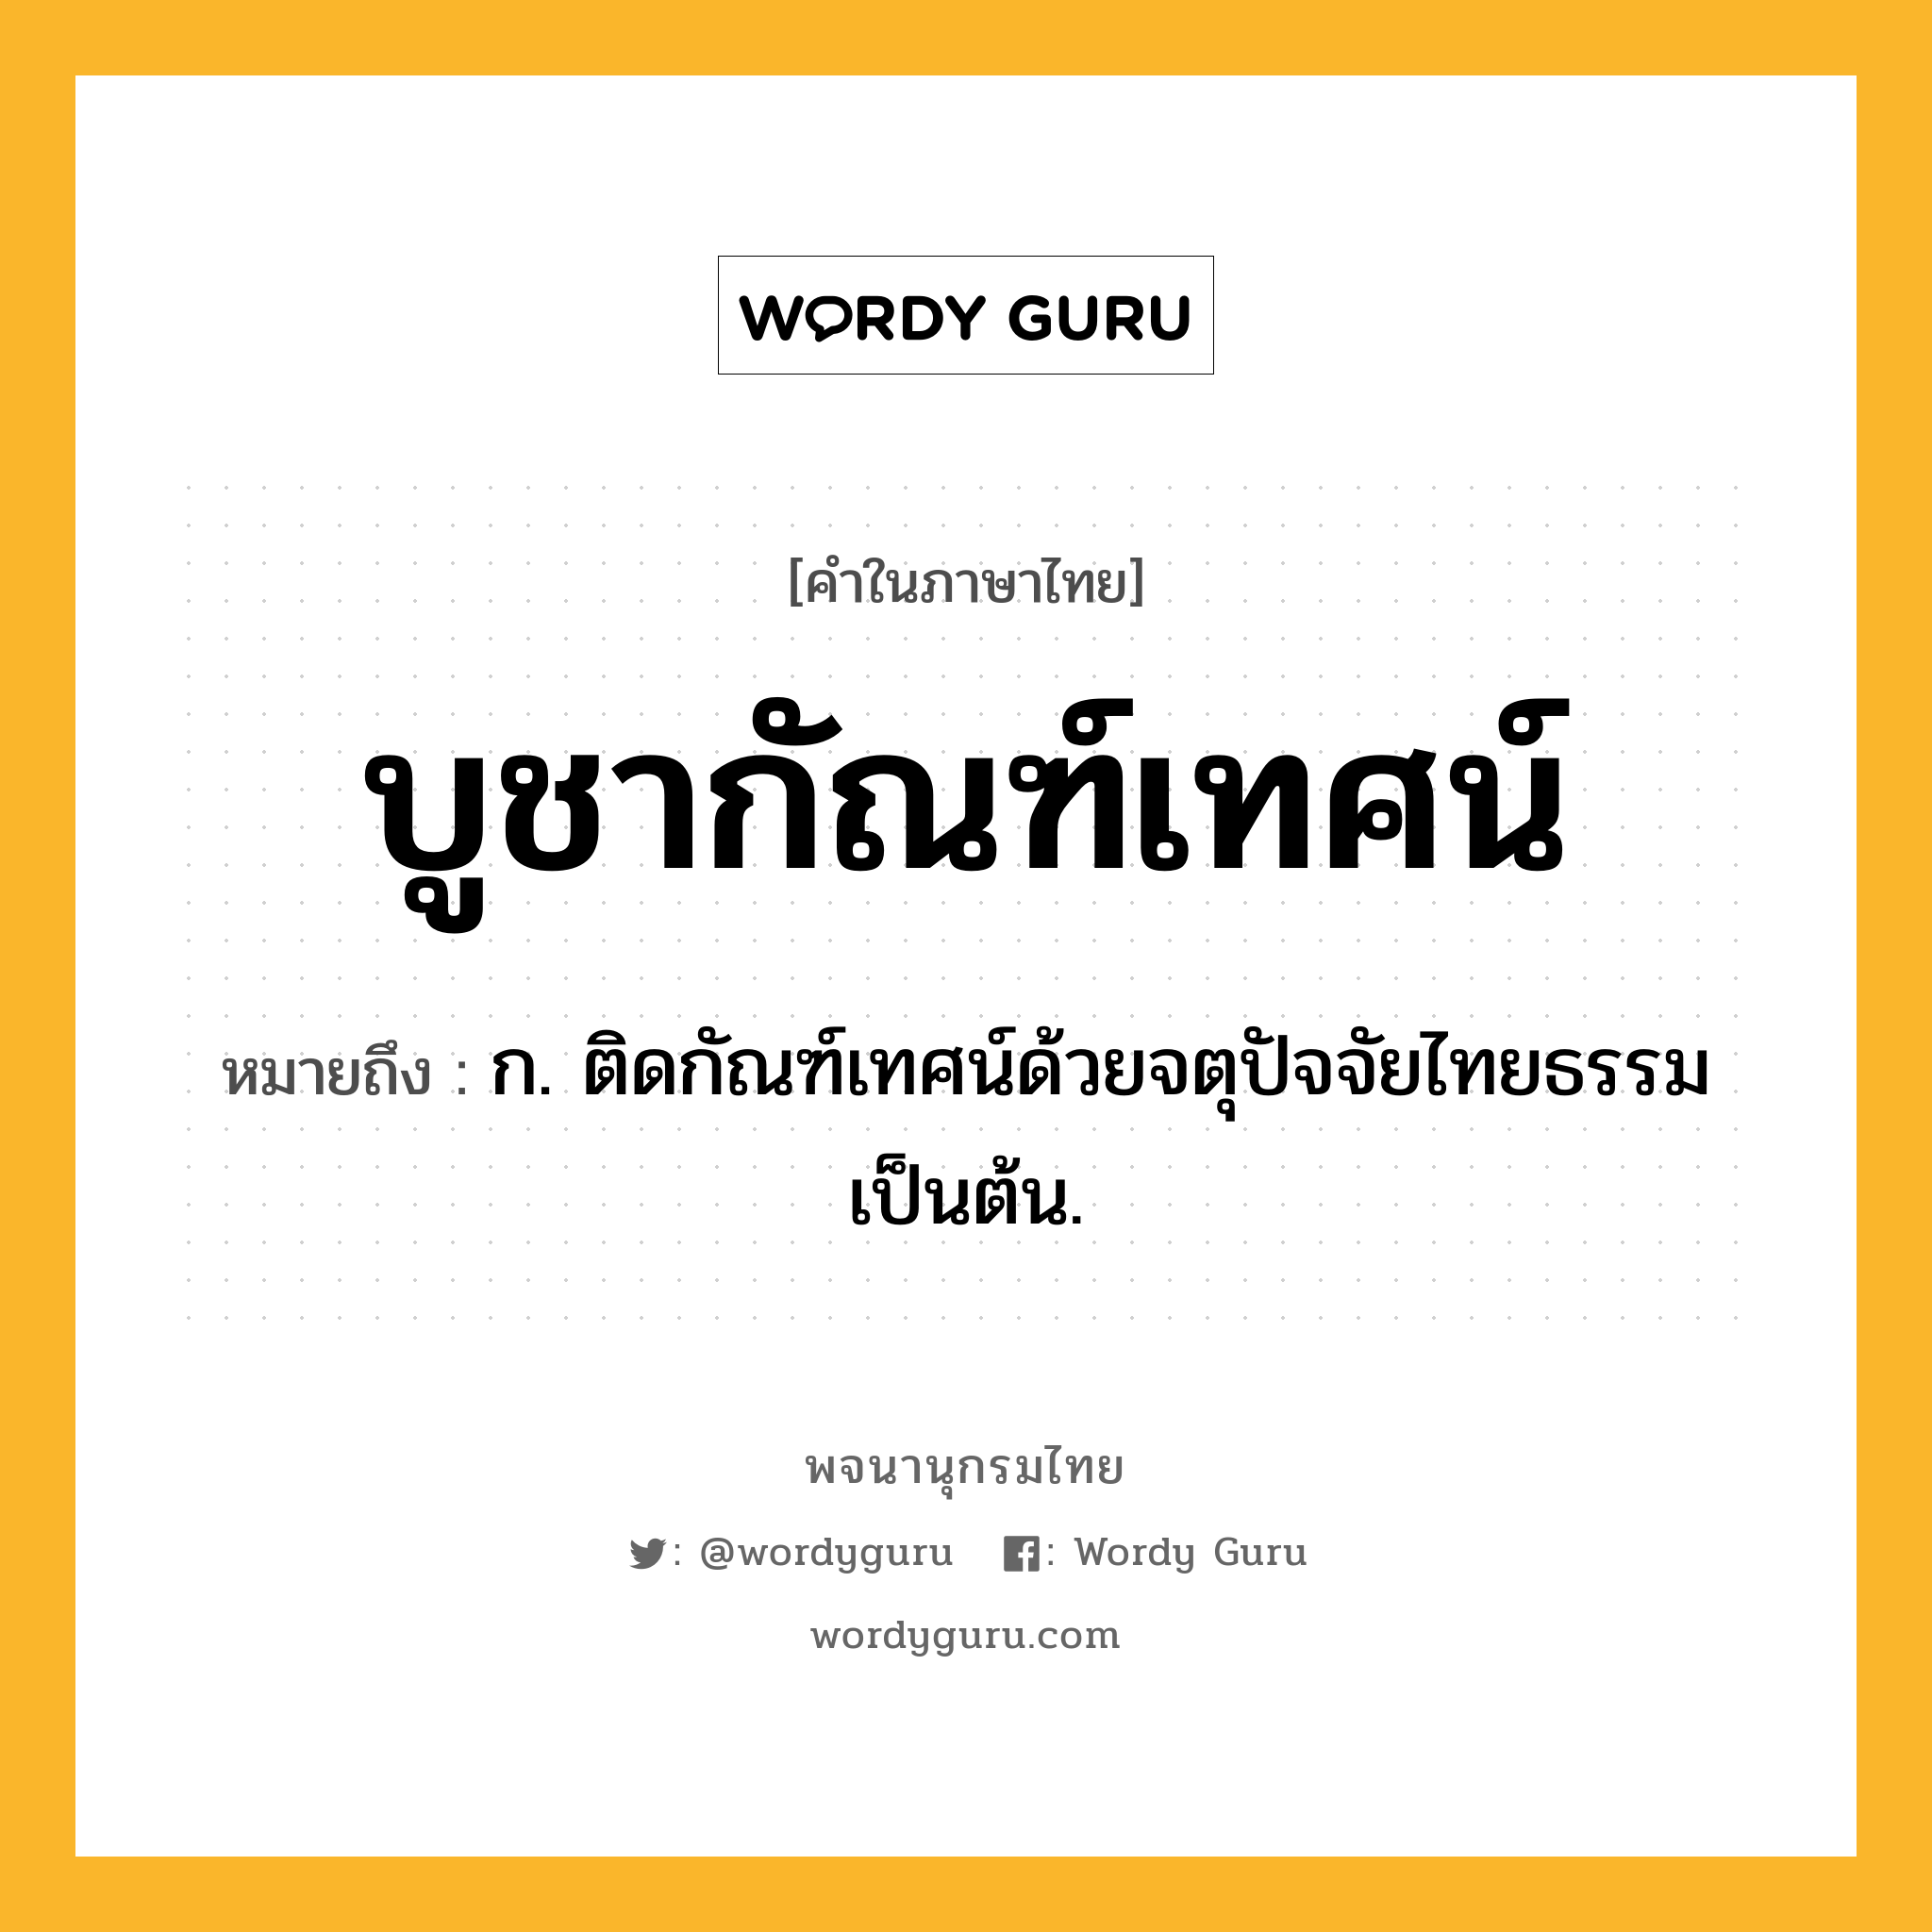 บูชากัณฑ์เทศน์ หมายถึงอะไร?, คำในภาษาไทย บูชากัณฑ์เทศน์ หมายถึง ก. ติดกัณฑ์เทศน์ด้วยจตุปัจจัยไทยธรรมเป็นต้น.